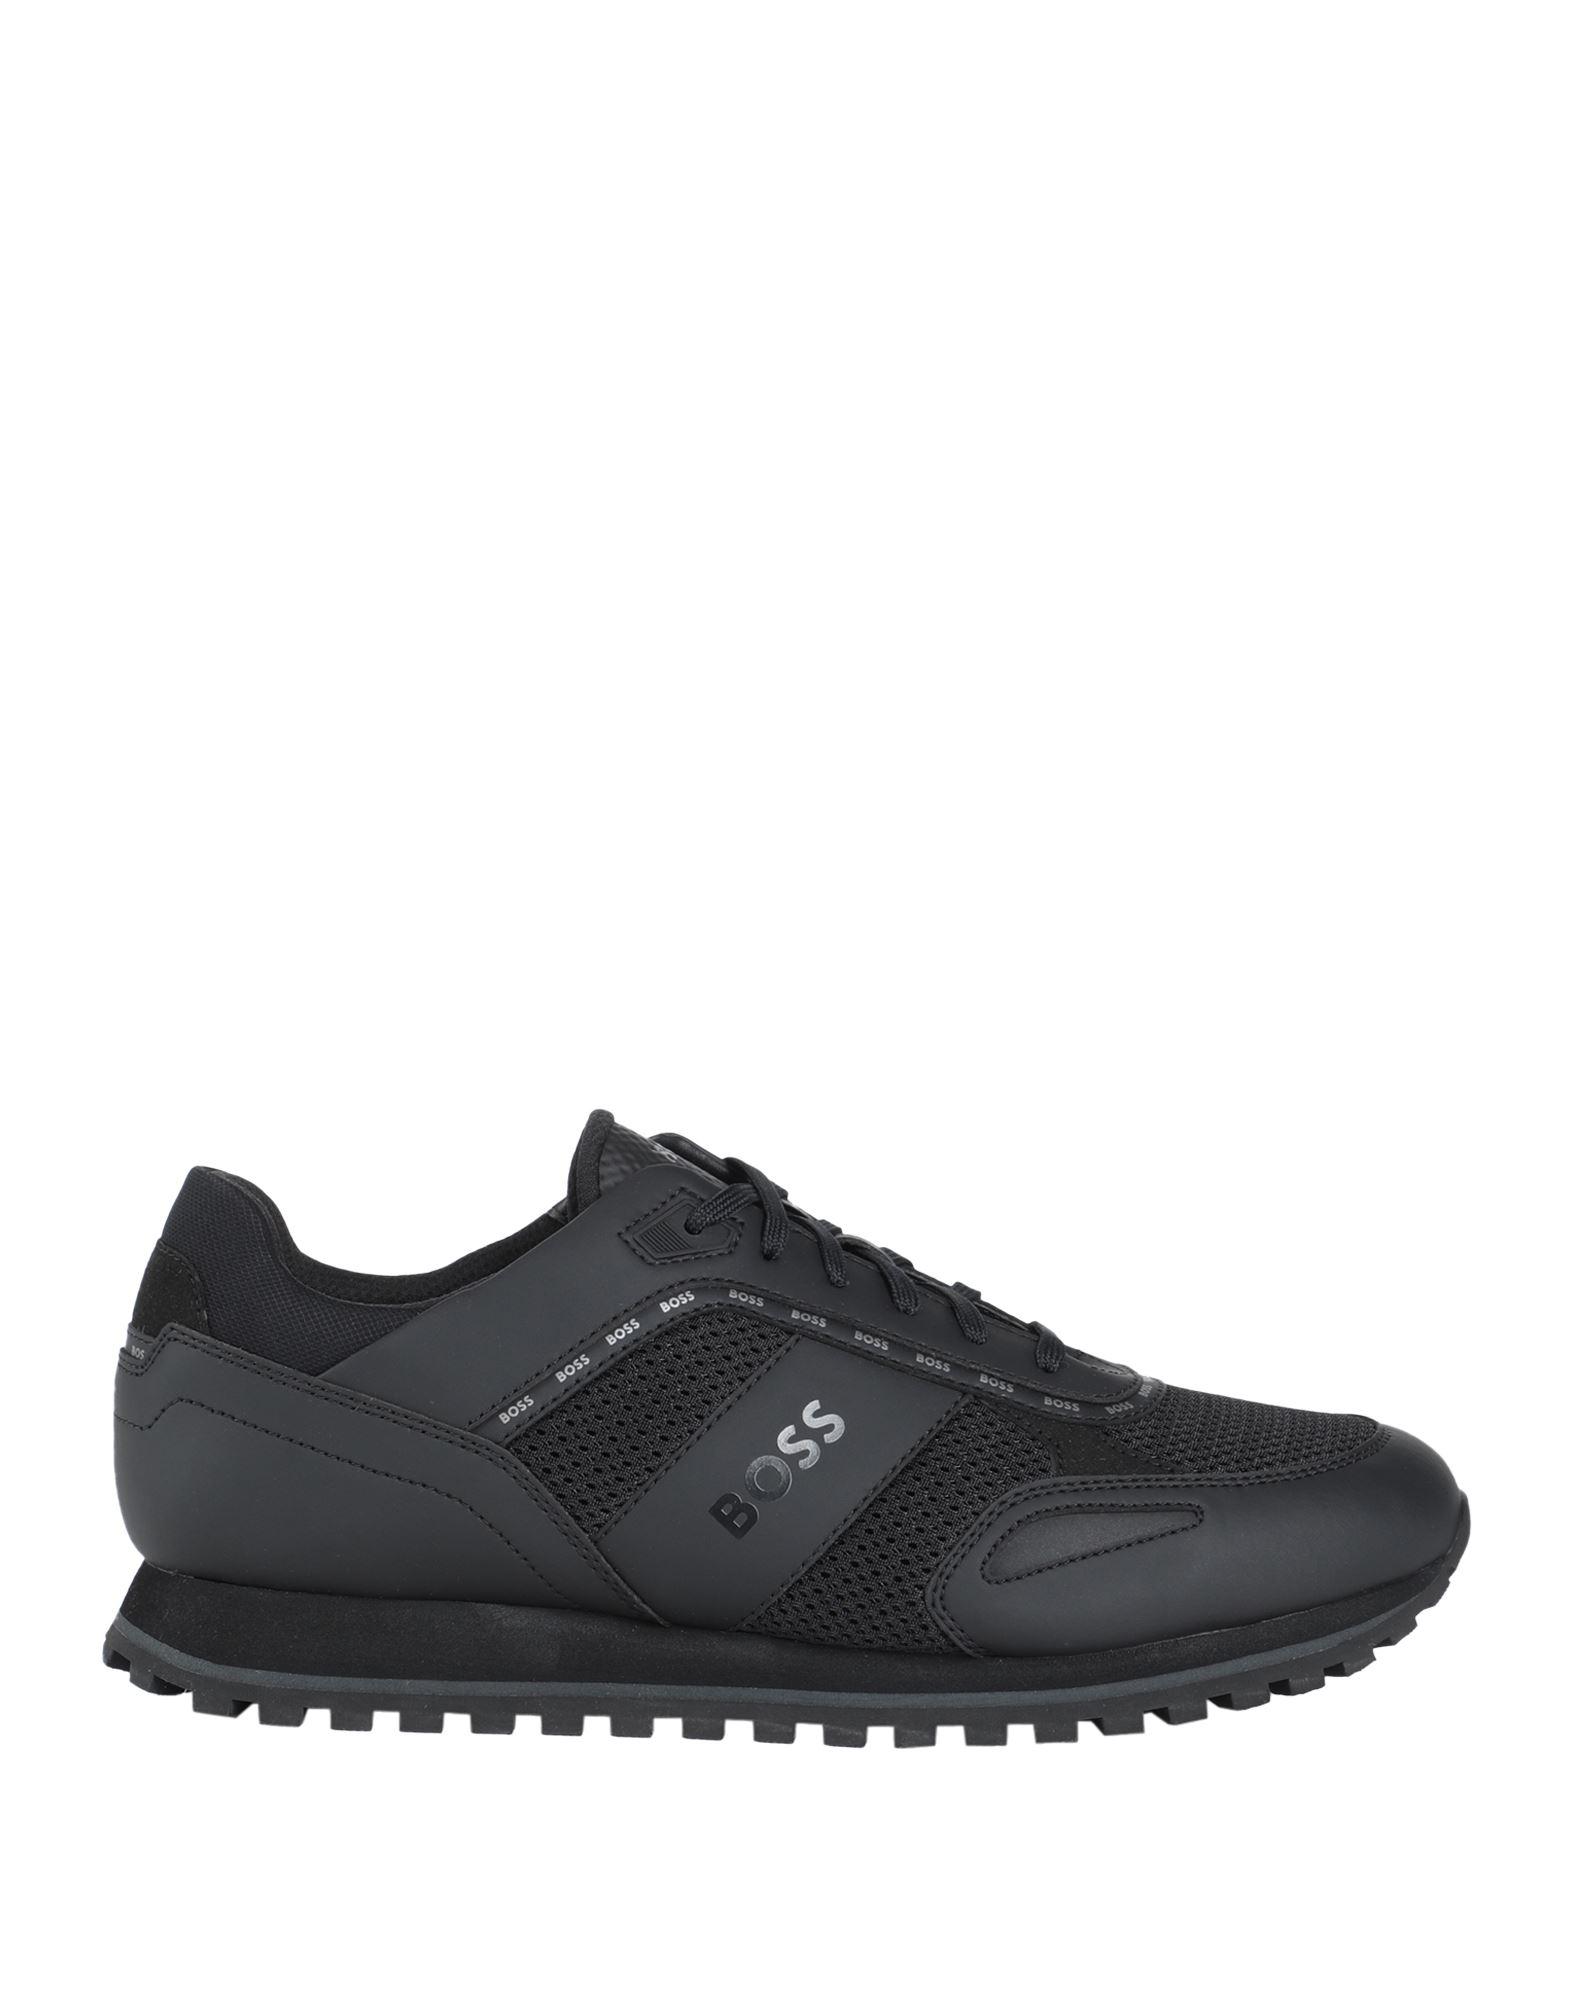 BOSS by HUGO BOSS Sneakers in Black for Men | Lyst